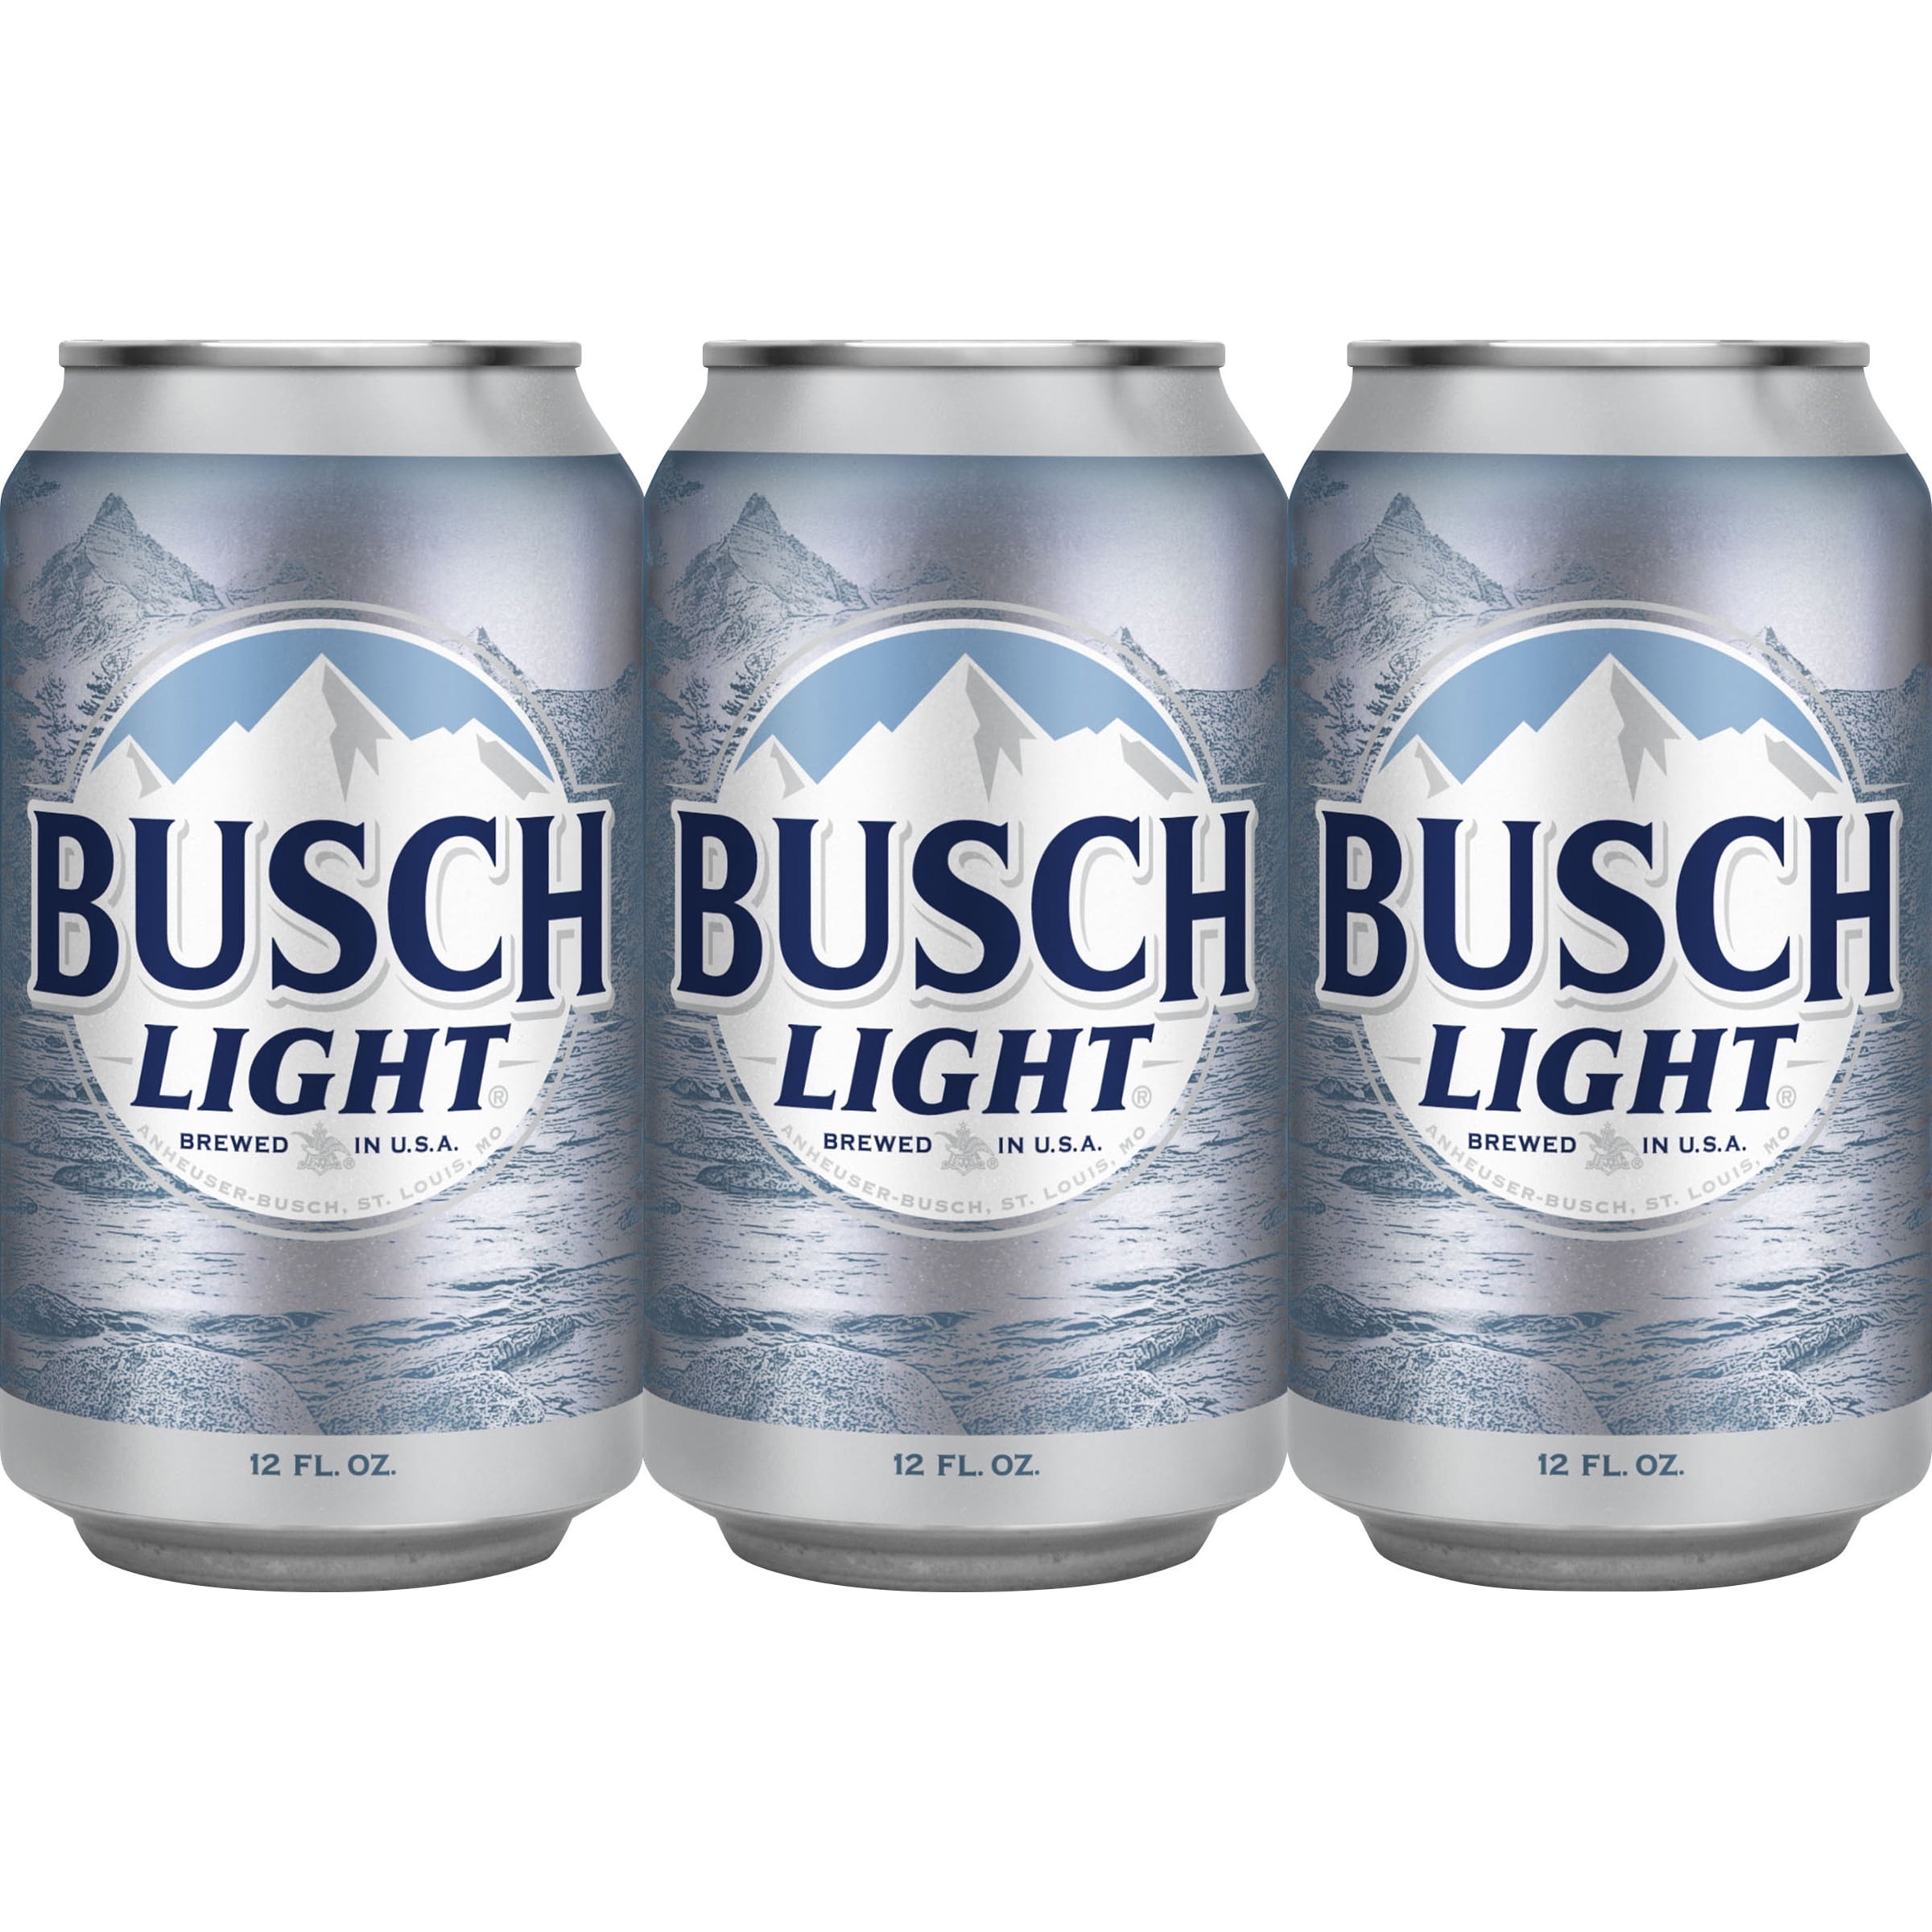 6 pack busch light price busch light beer 6 pack 12 fl oz cans walmart com....